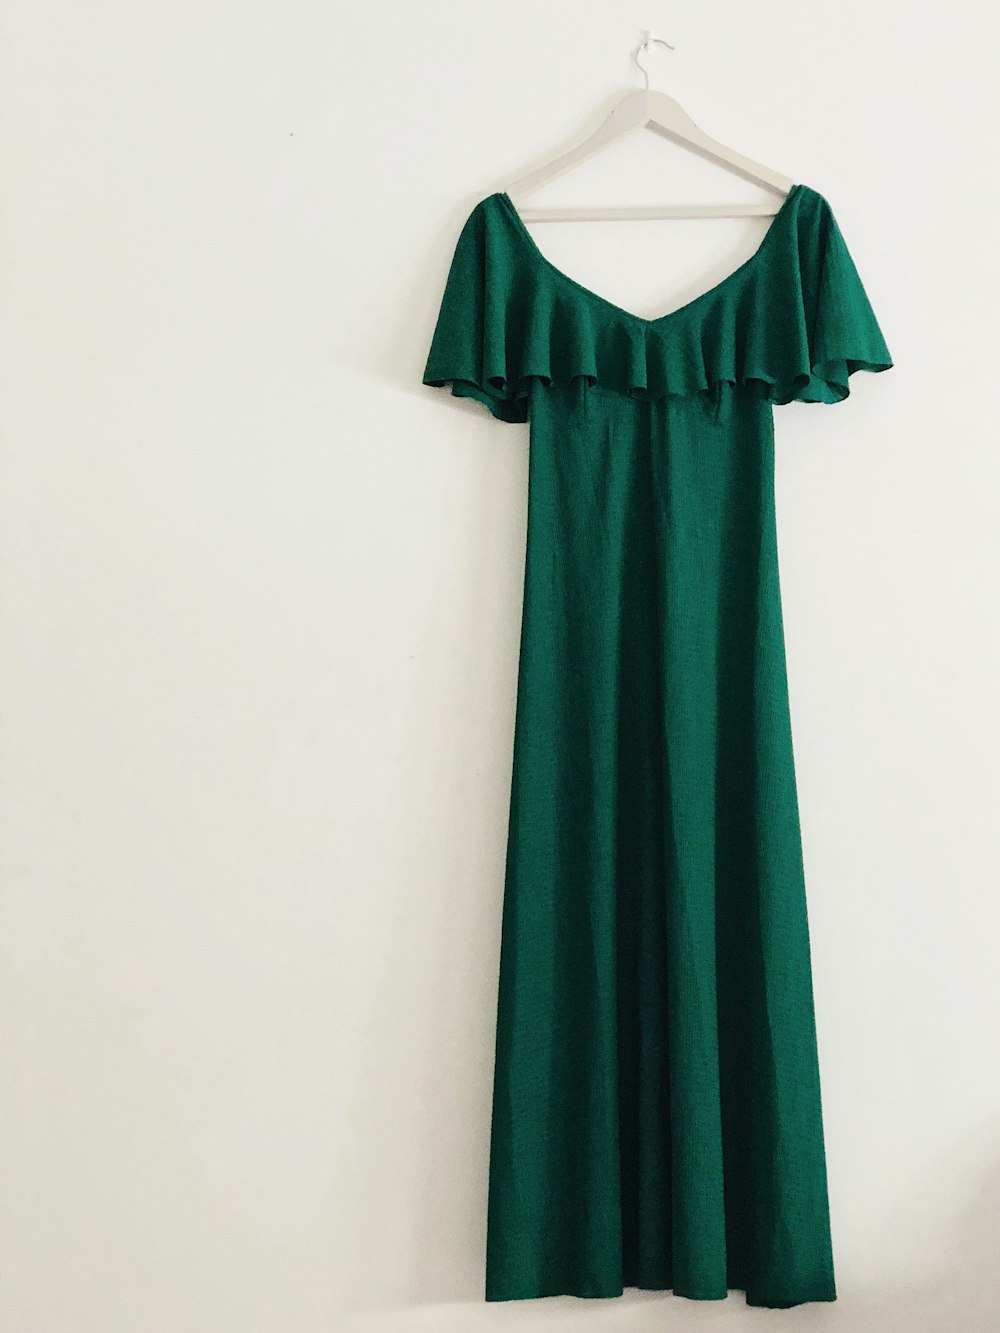 vestido verde sem mangas pendurado na parede branca